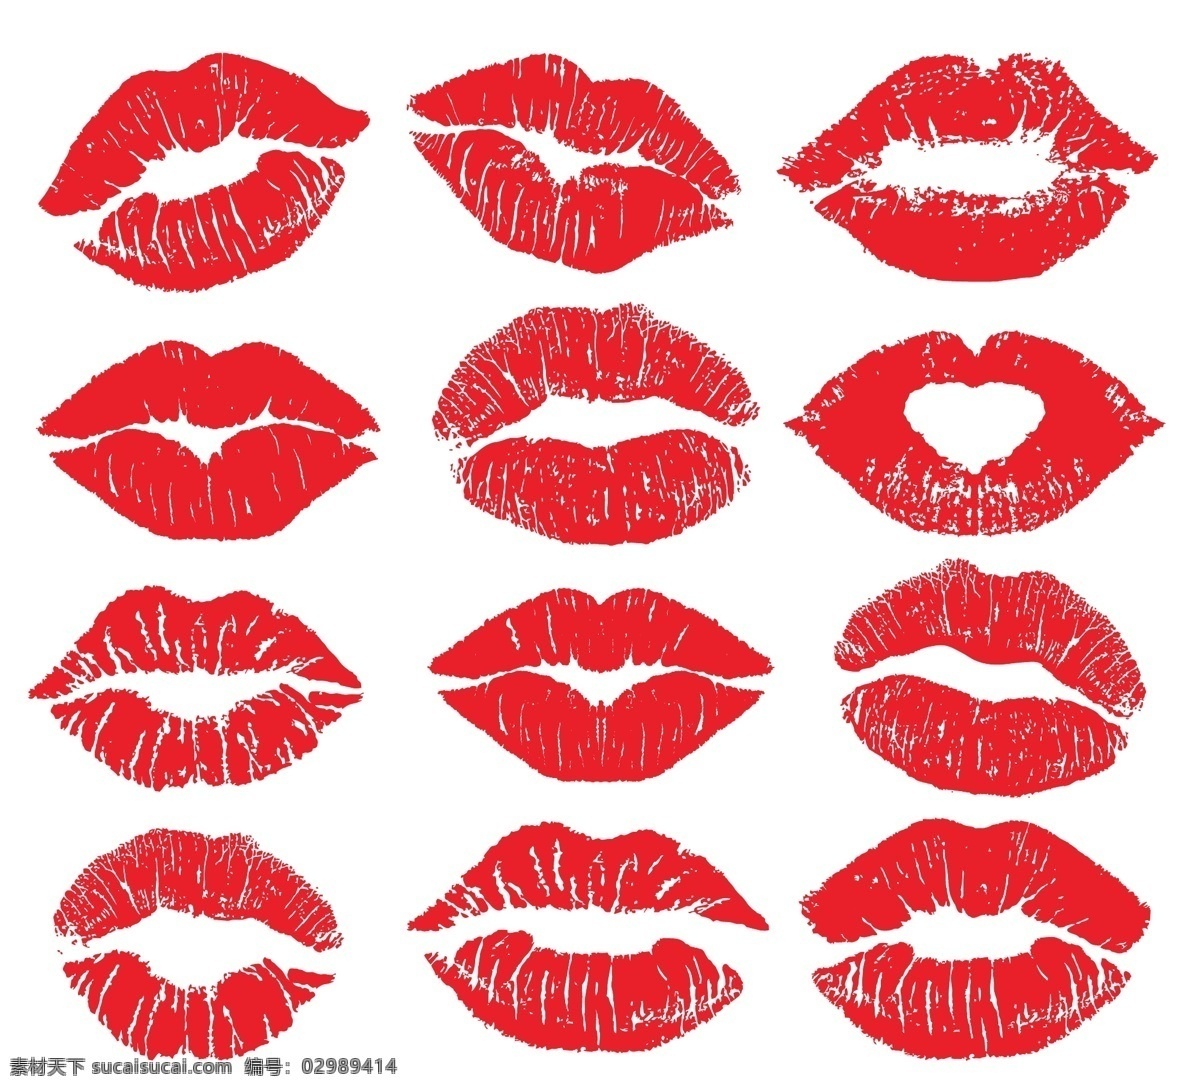 唇印合集 口红 吻 嘴唇 唇印 情人节 时尚 女性 插图 浪漫 化妆 女孩 图标 红色 诱人 化妆品 标志